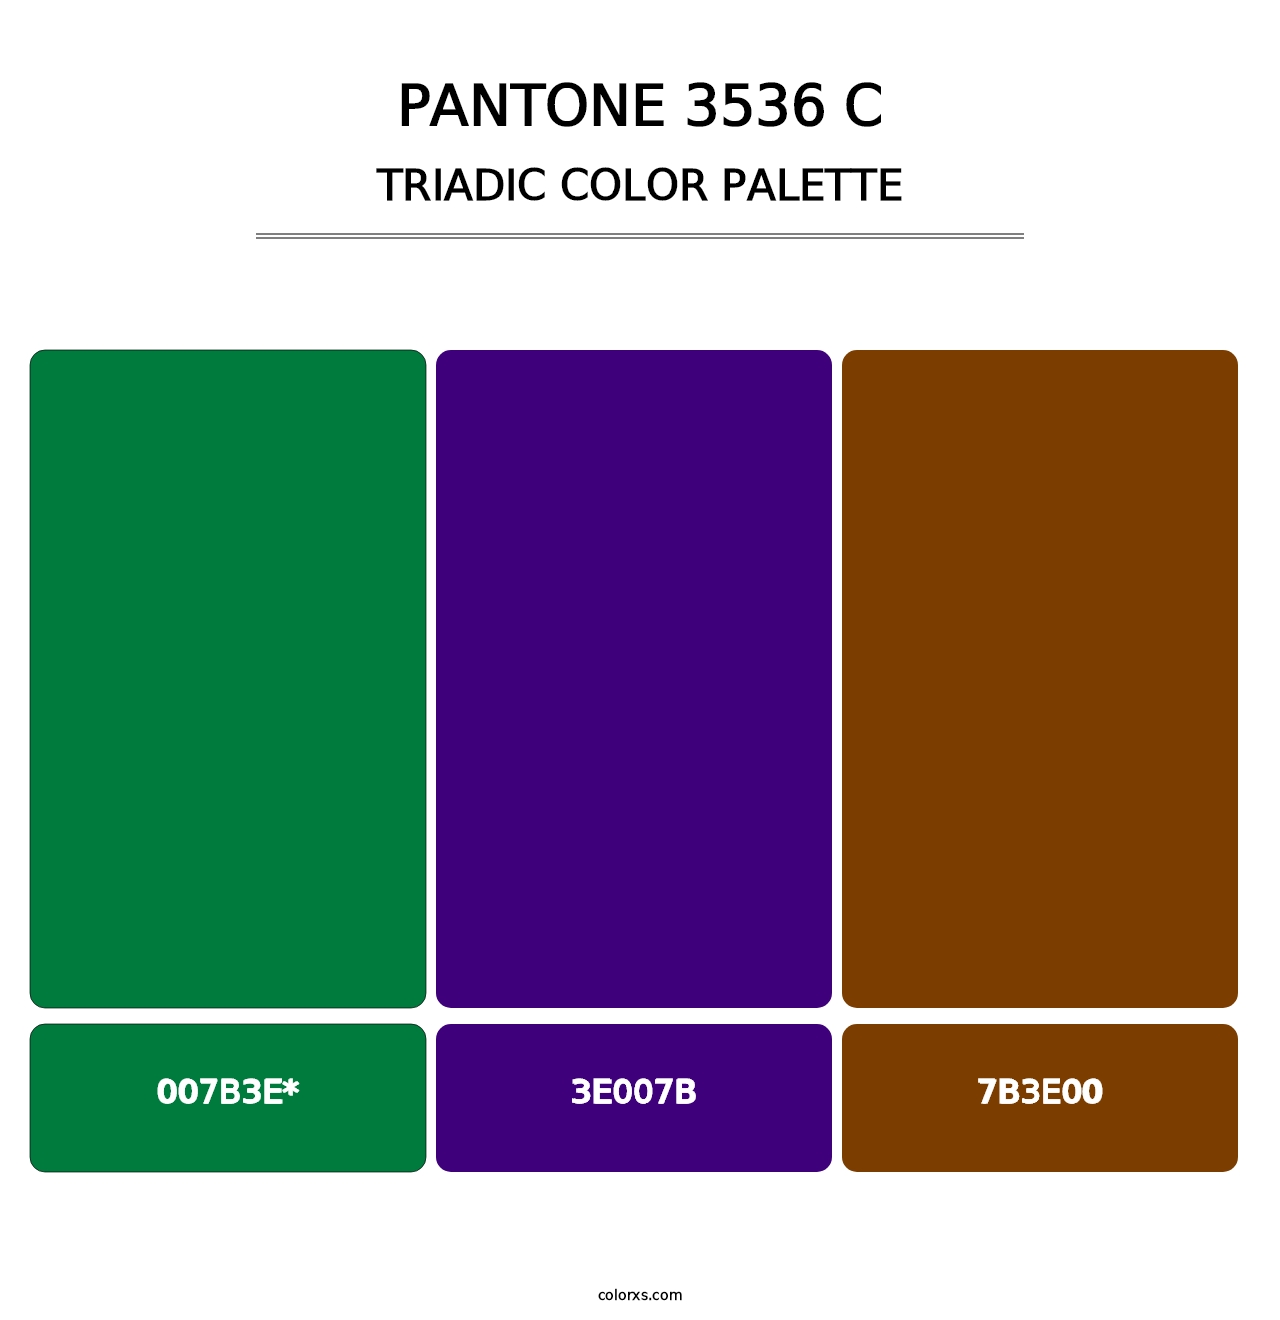 PANTONE 3536 C - Triadic Color Palette